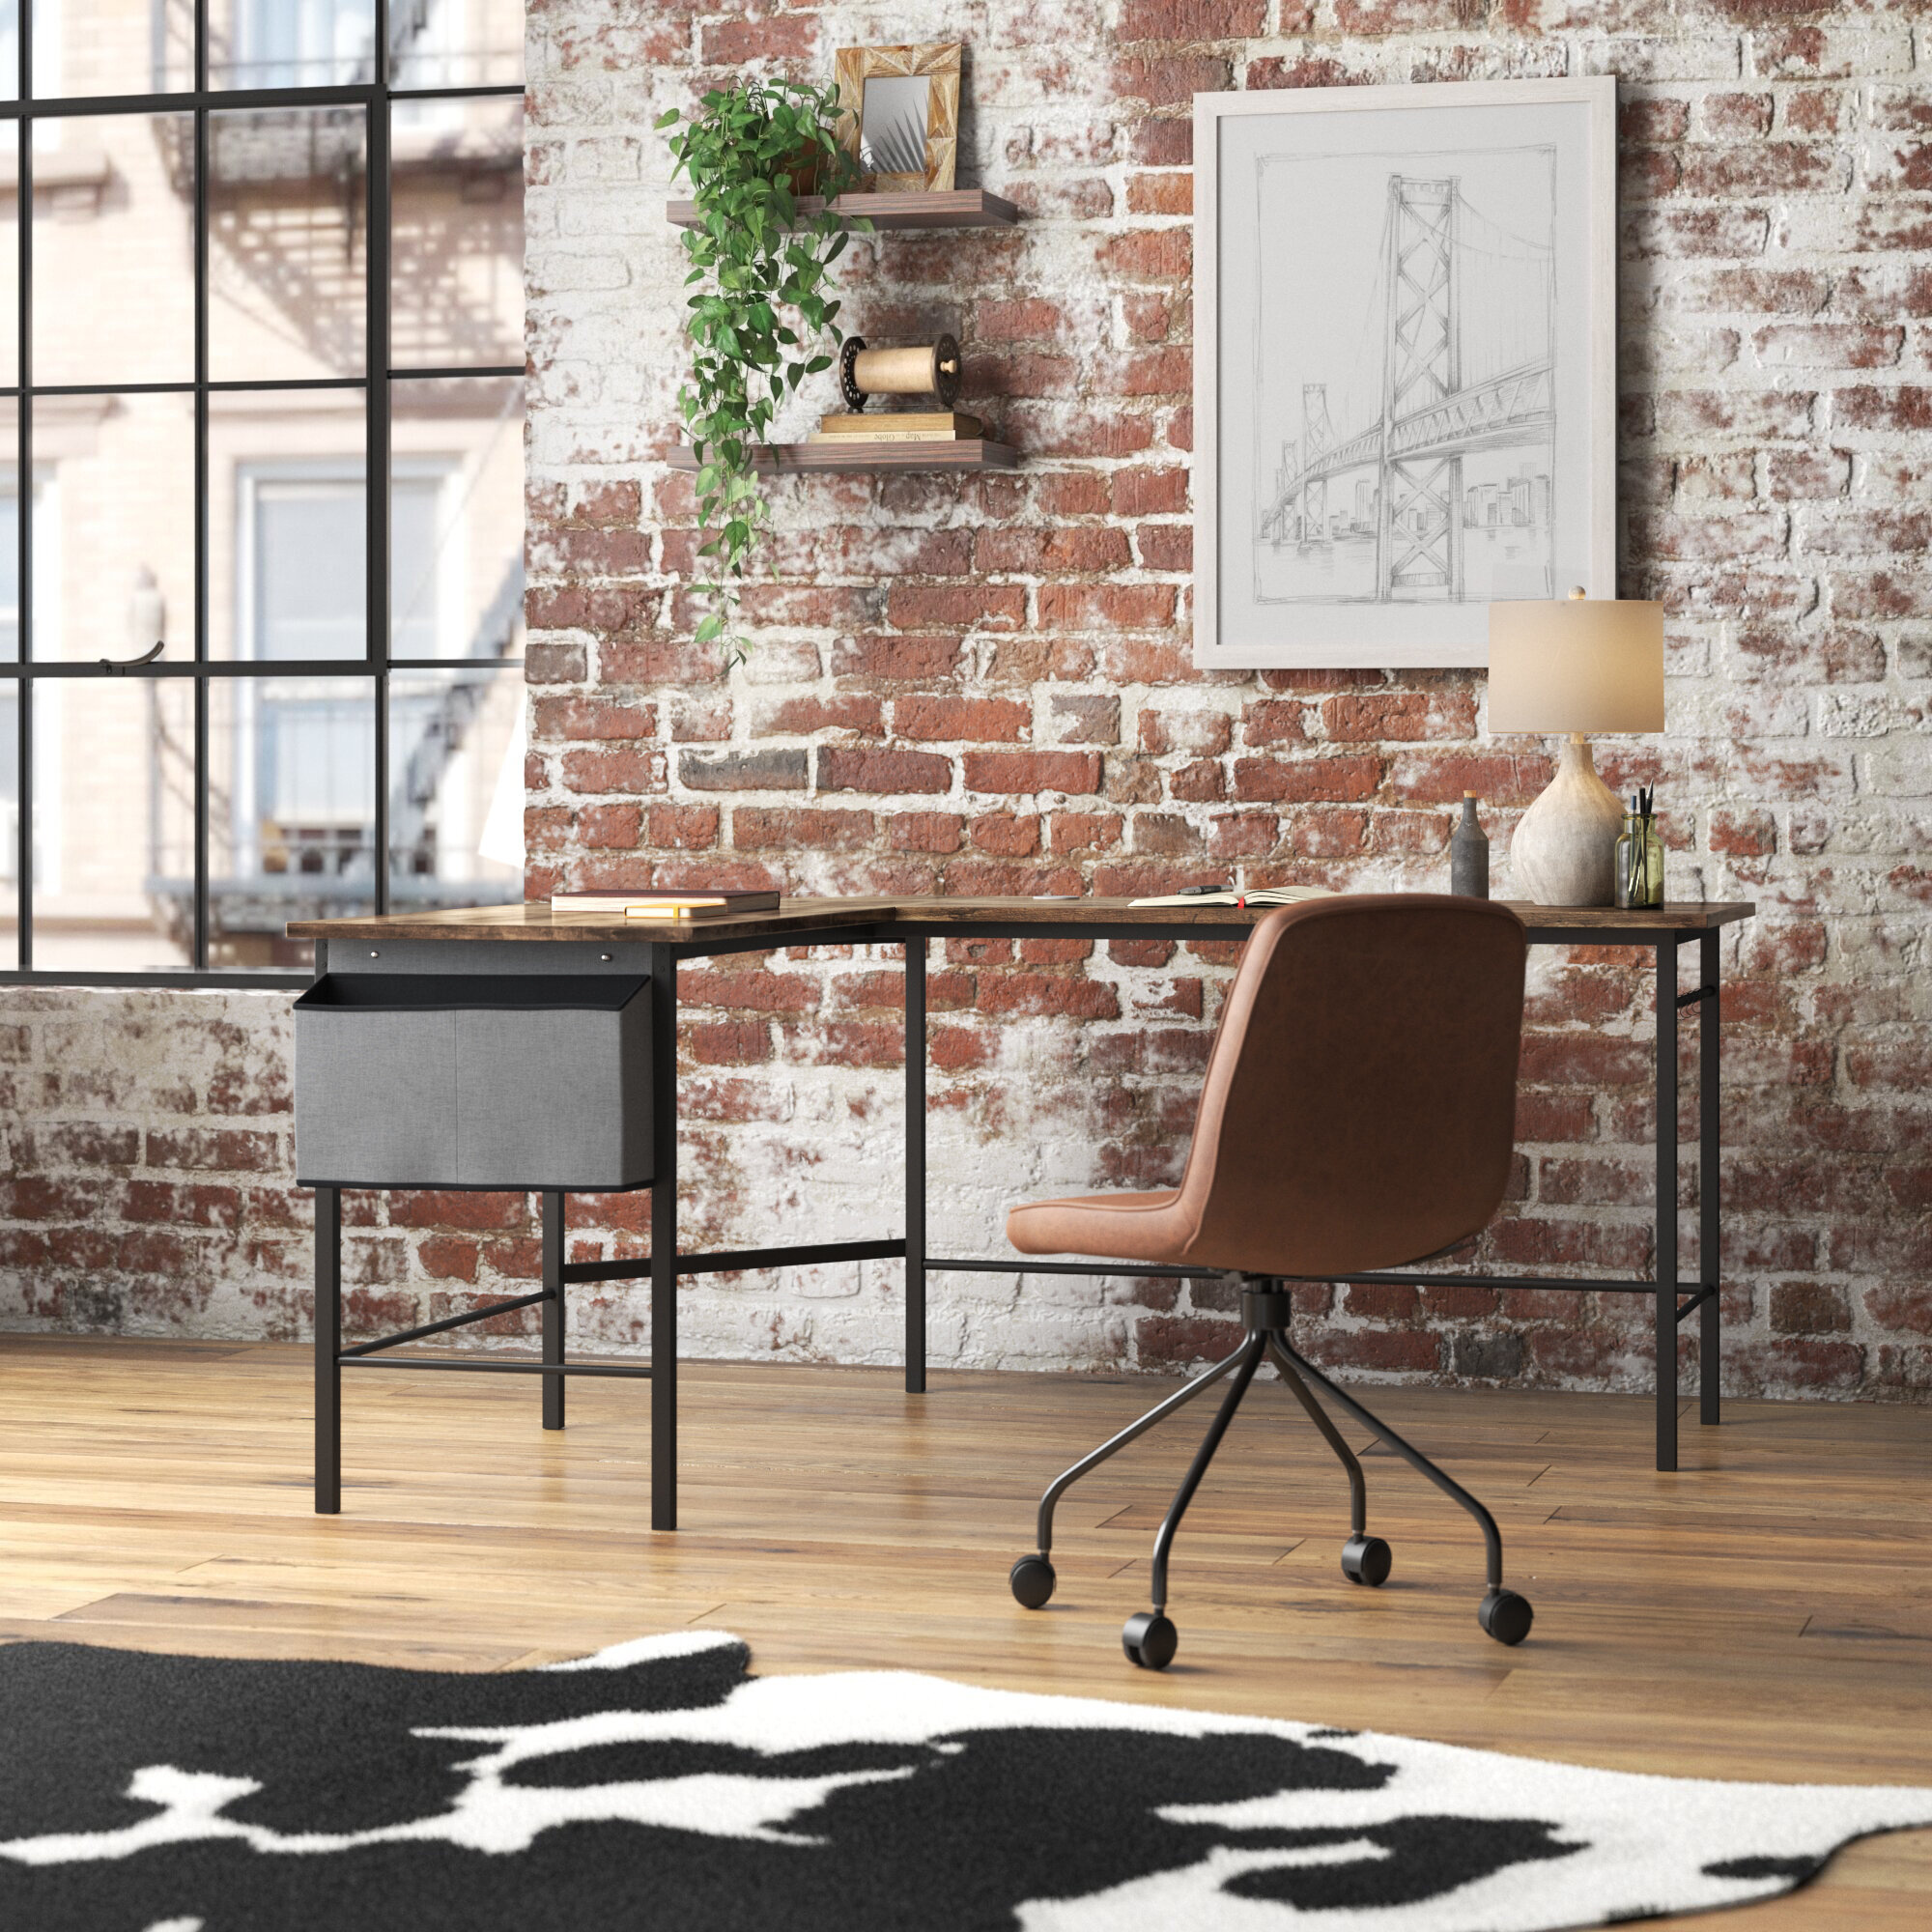 Steelside tarren L shape desk, Industrial style, Functional workspace, Modern design, 2000x2000 HD Phone